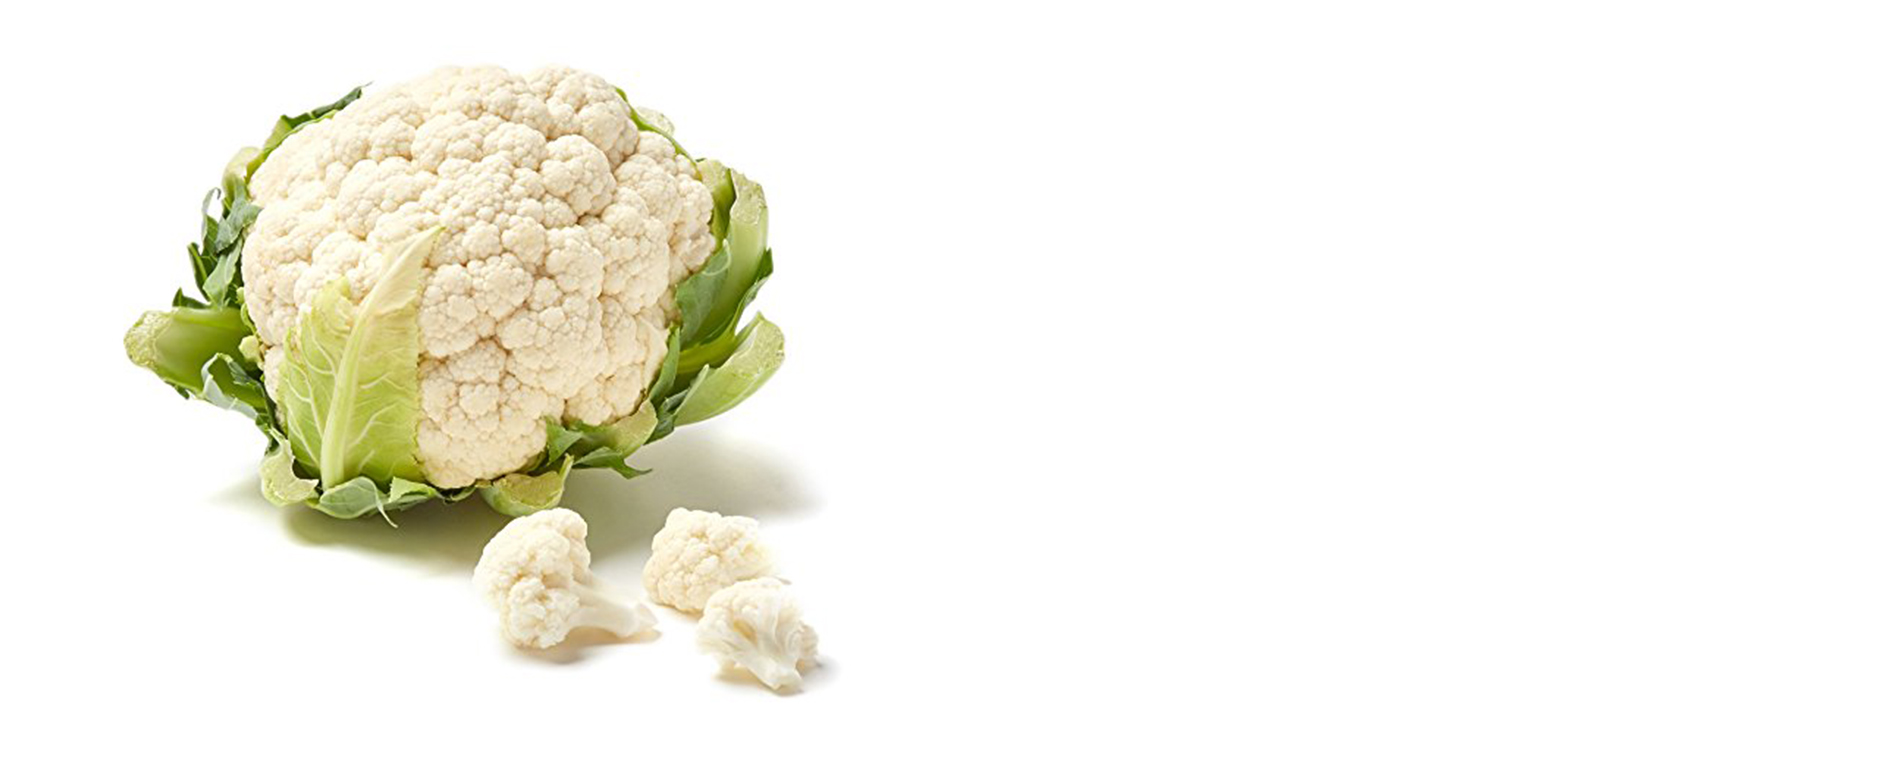 cauliflower image